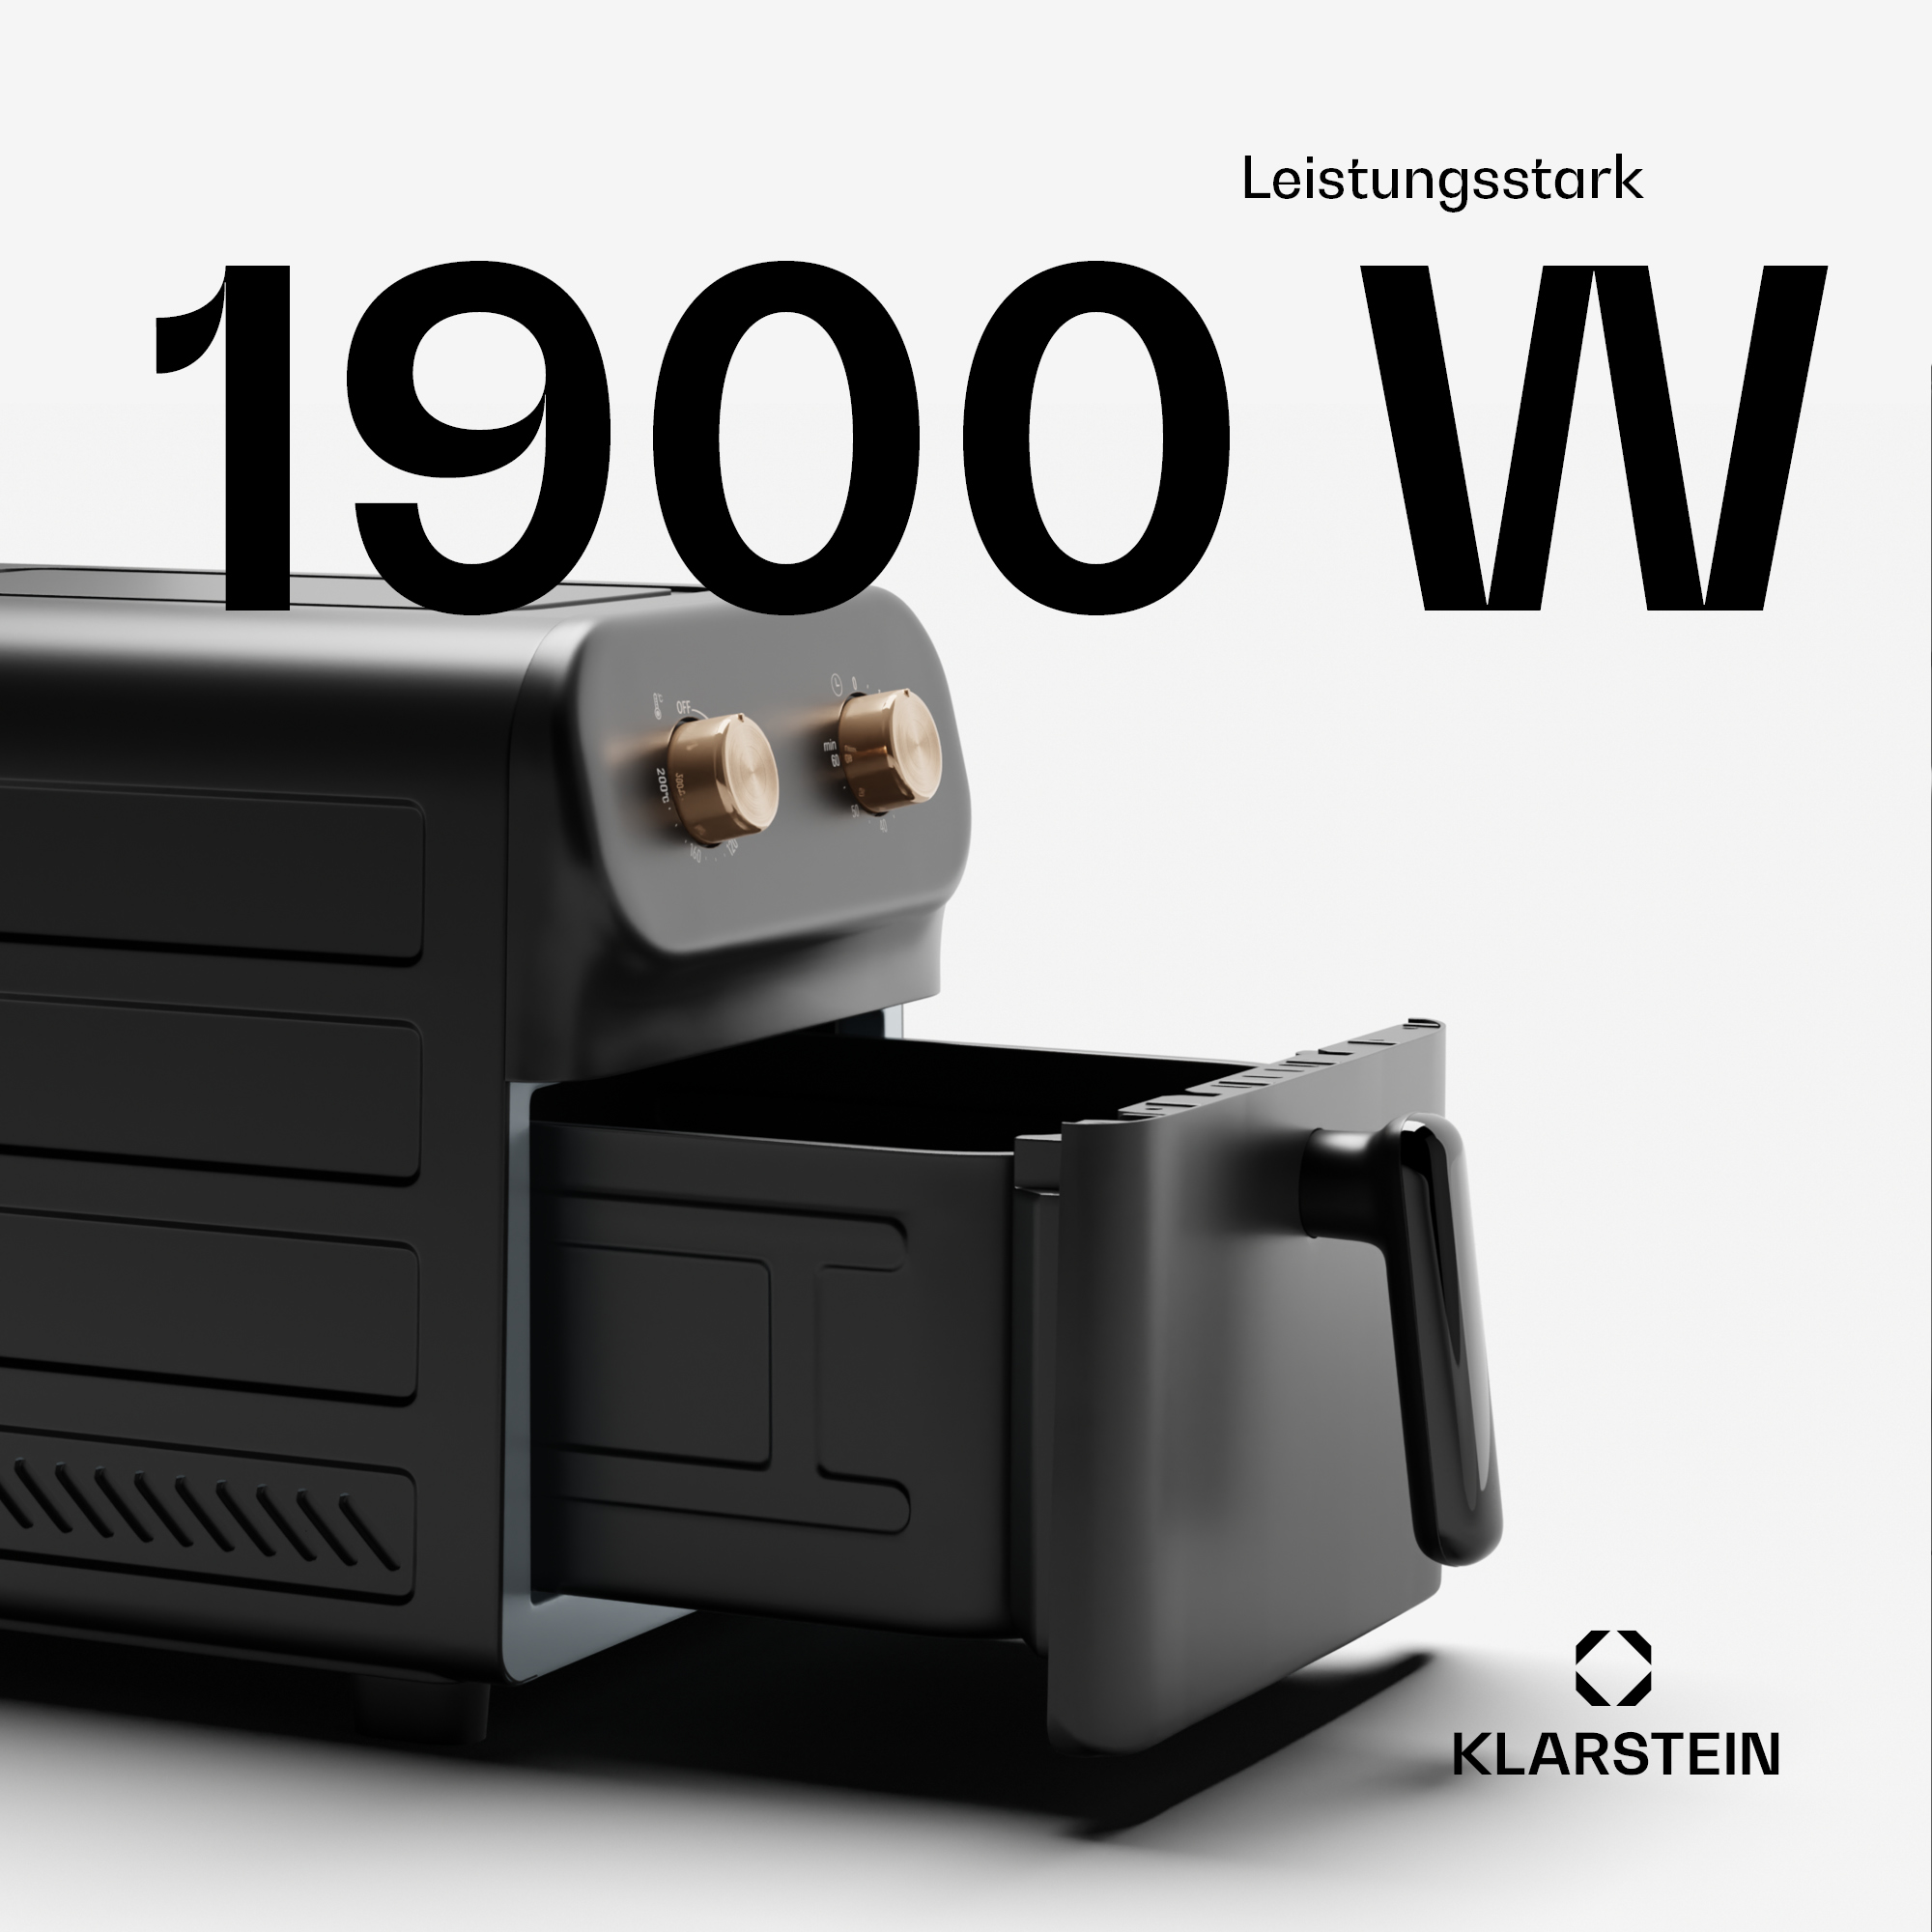 9 1900 Watt Schwarz AeroCrisp Heißluftfritteuse KLARSTEIN